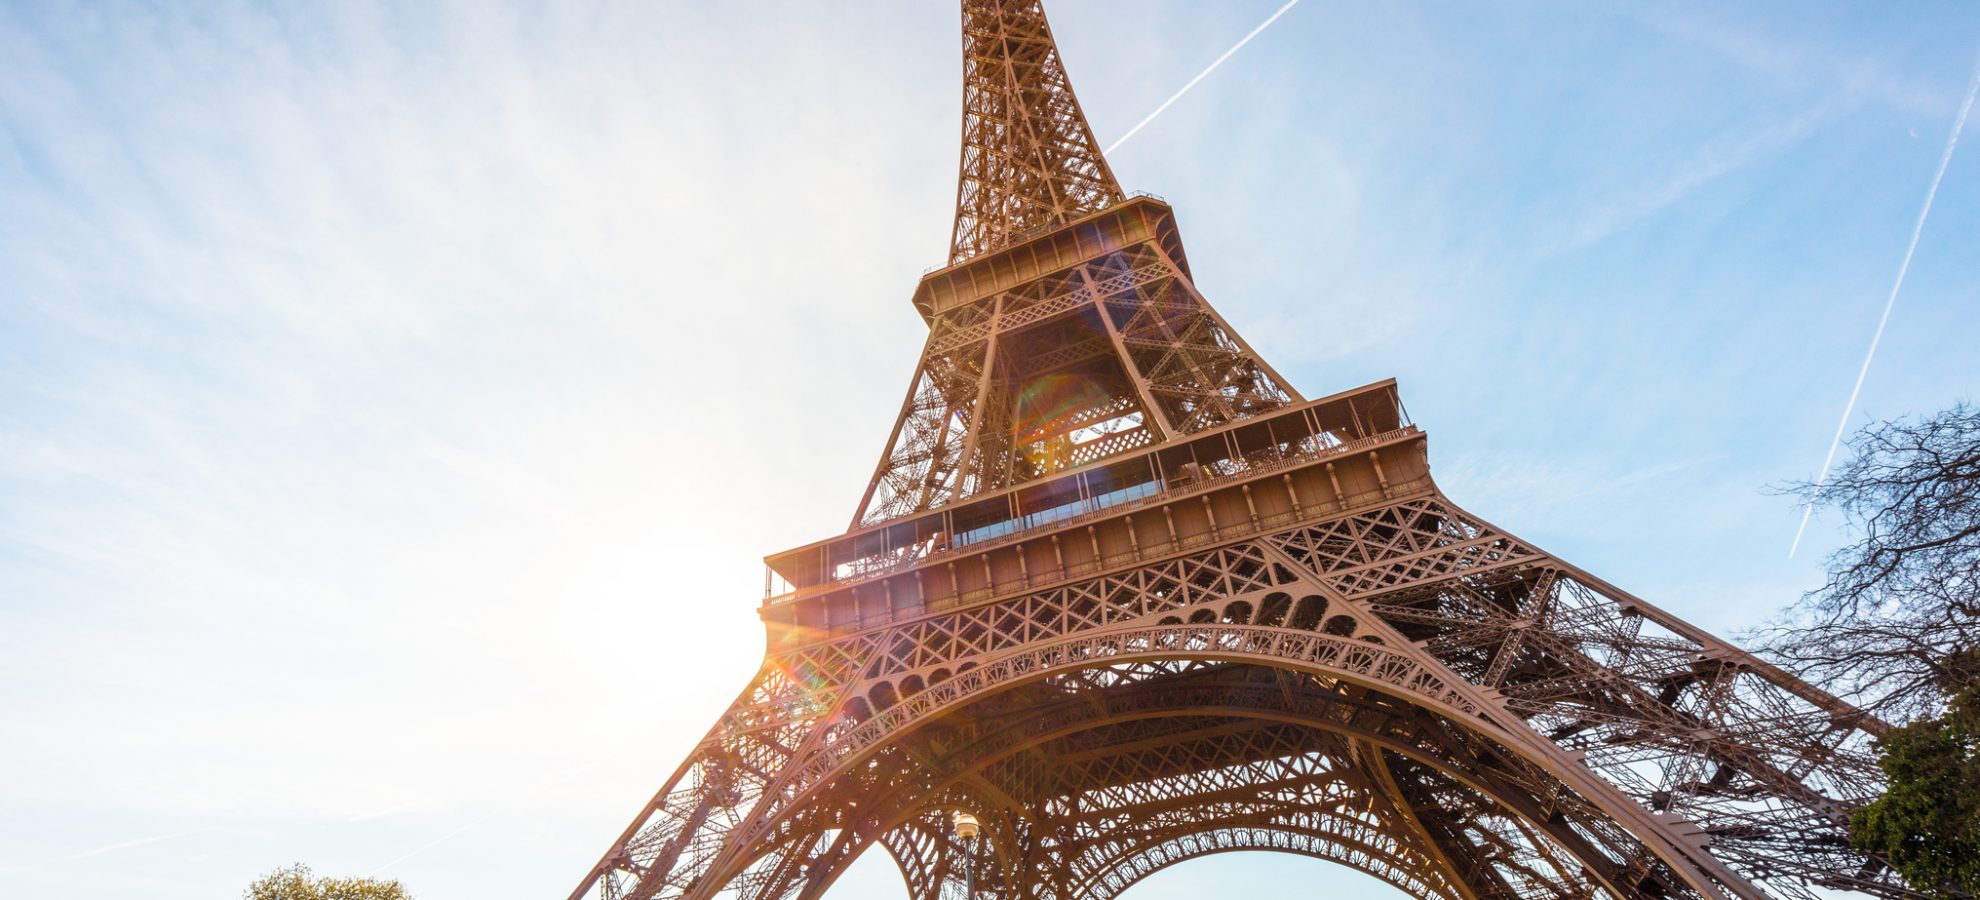 Bezienswaardigheden Parijs - De Eiffeltoren